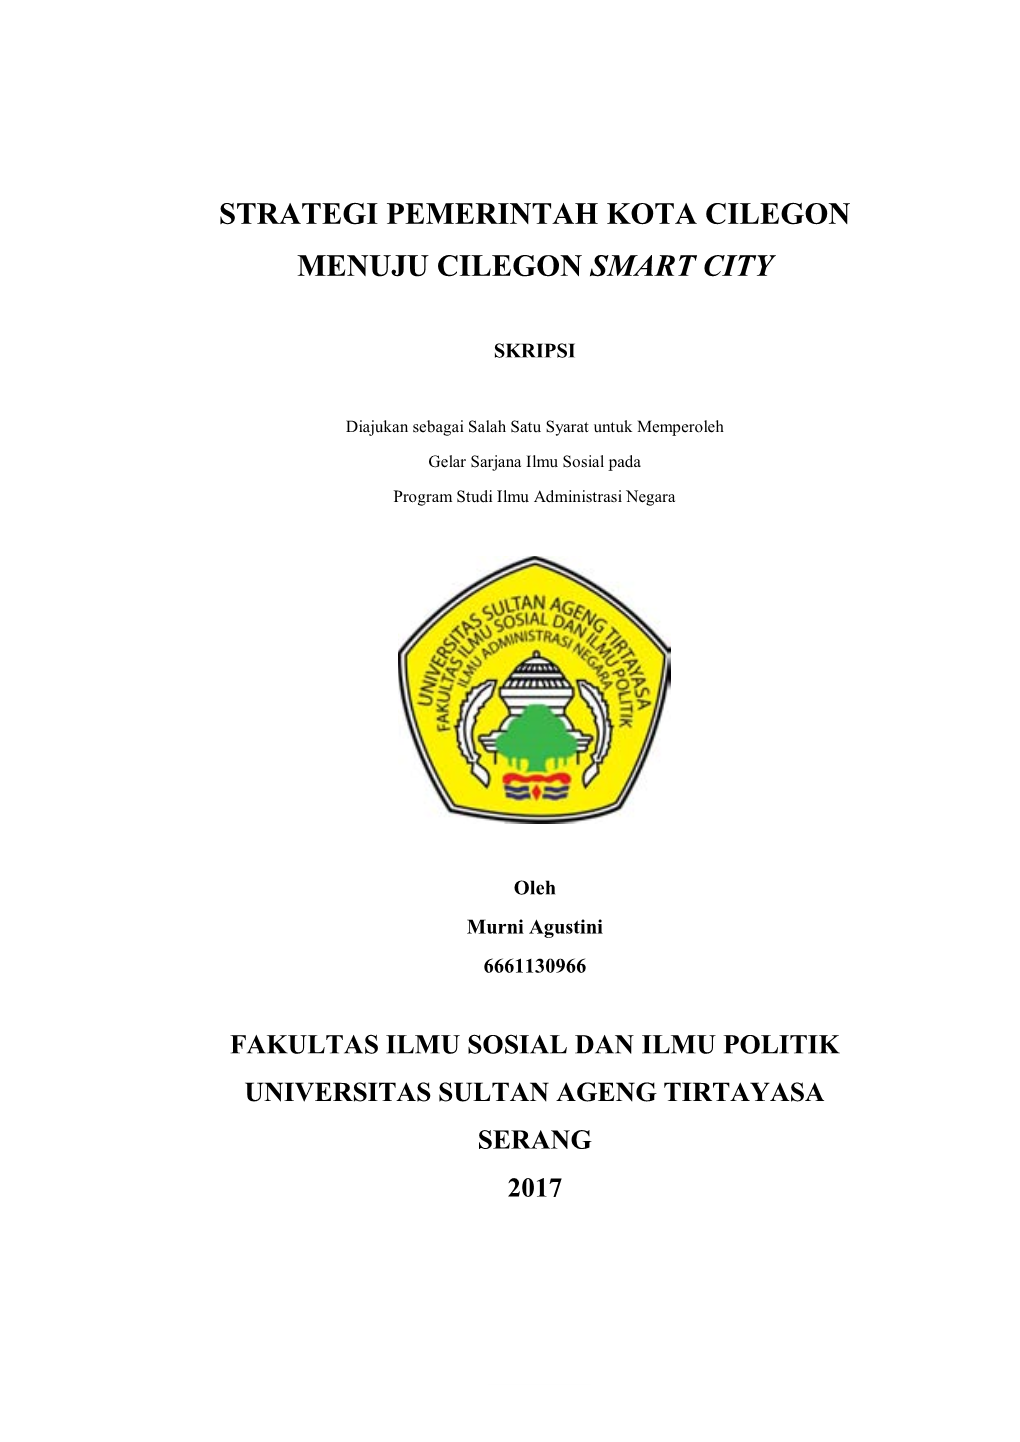 Strategi Pemerintah Kota Cilegon Menuju Cilegon Smart City